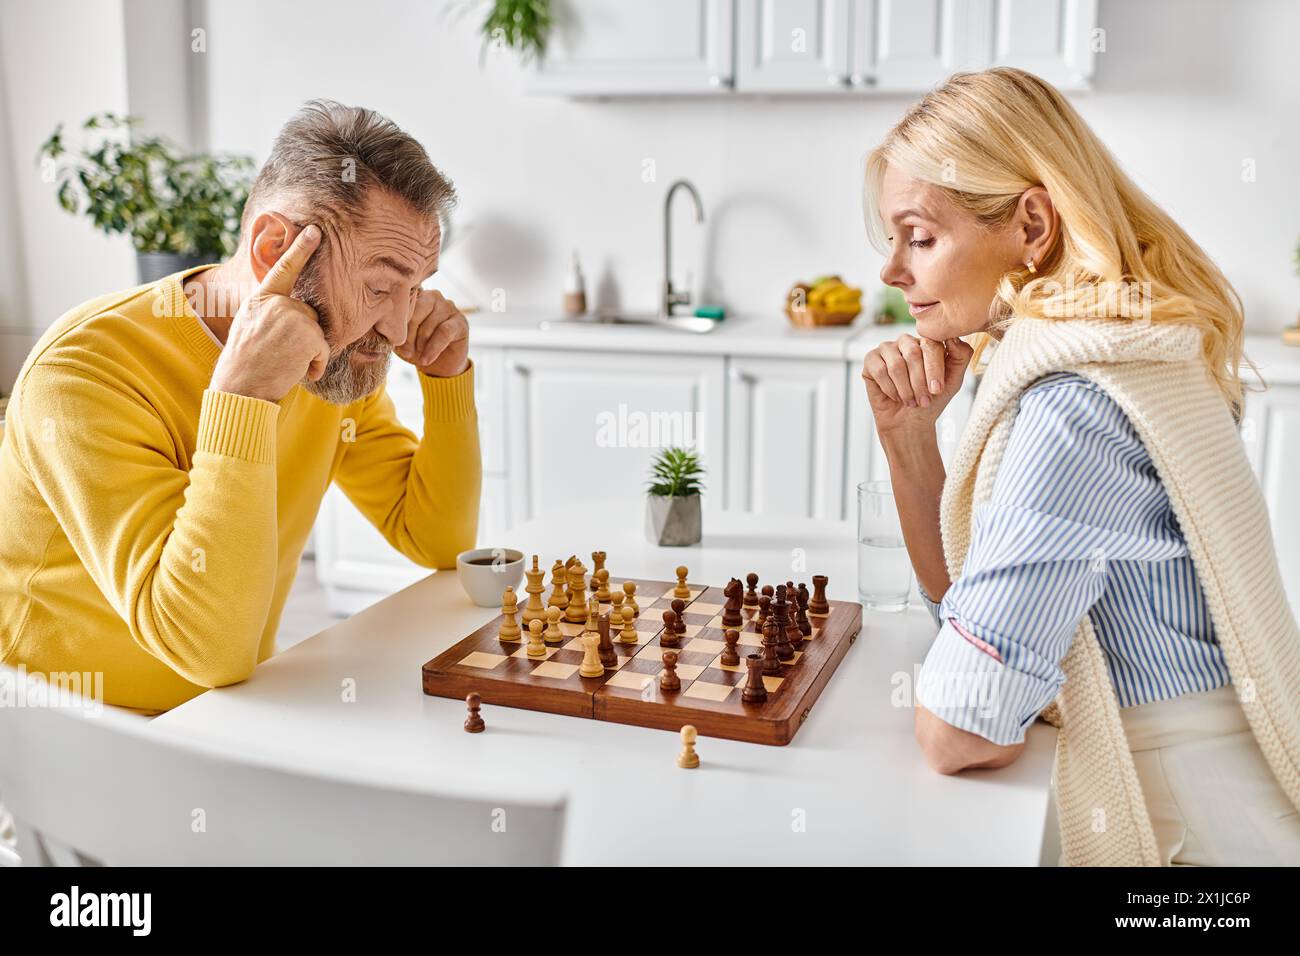 Ein reifes, liebevolles Paar in kuscheligen Hausbekleidung, das sich in einem strategischen Schachkampf an einem Tisch in ihrer Küche zu Hause engagiert. Stockfoto